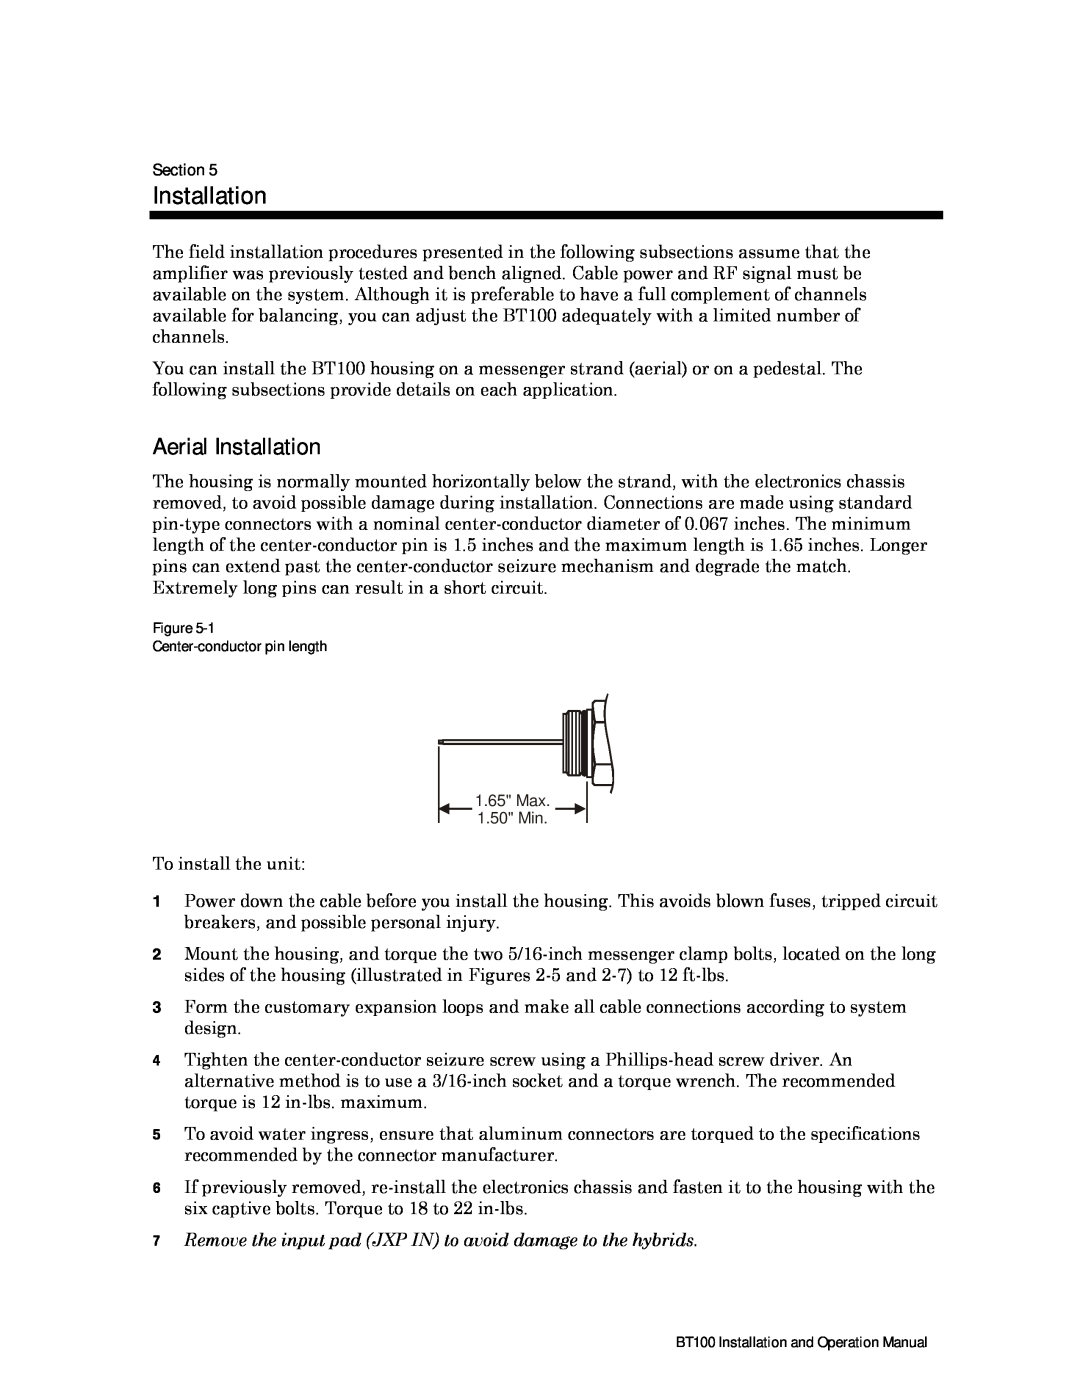 Motorola BT100 operation manual Aerial Installation, Section 